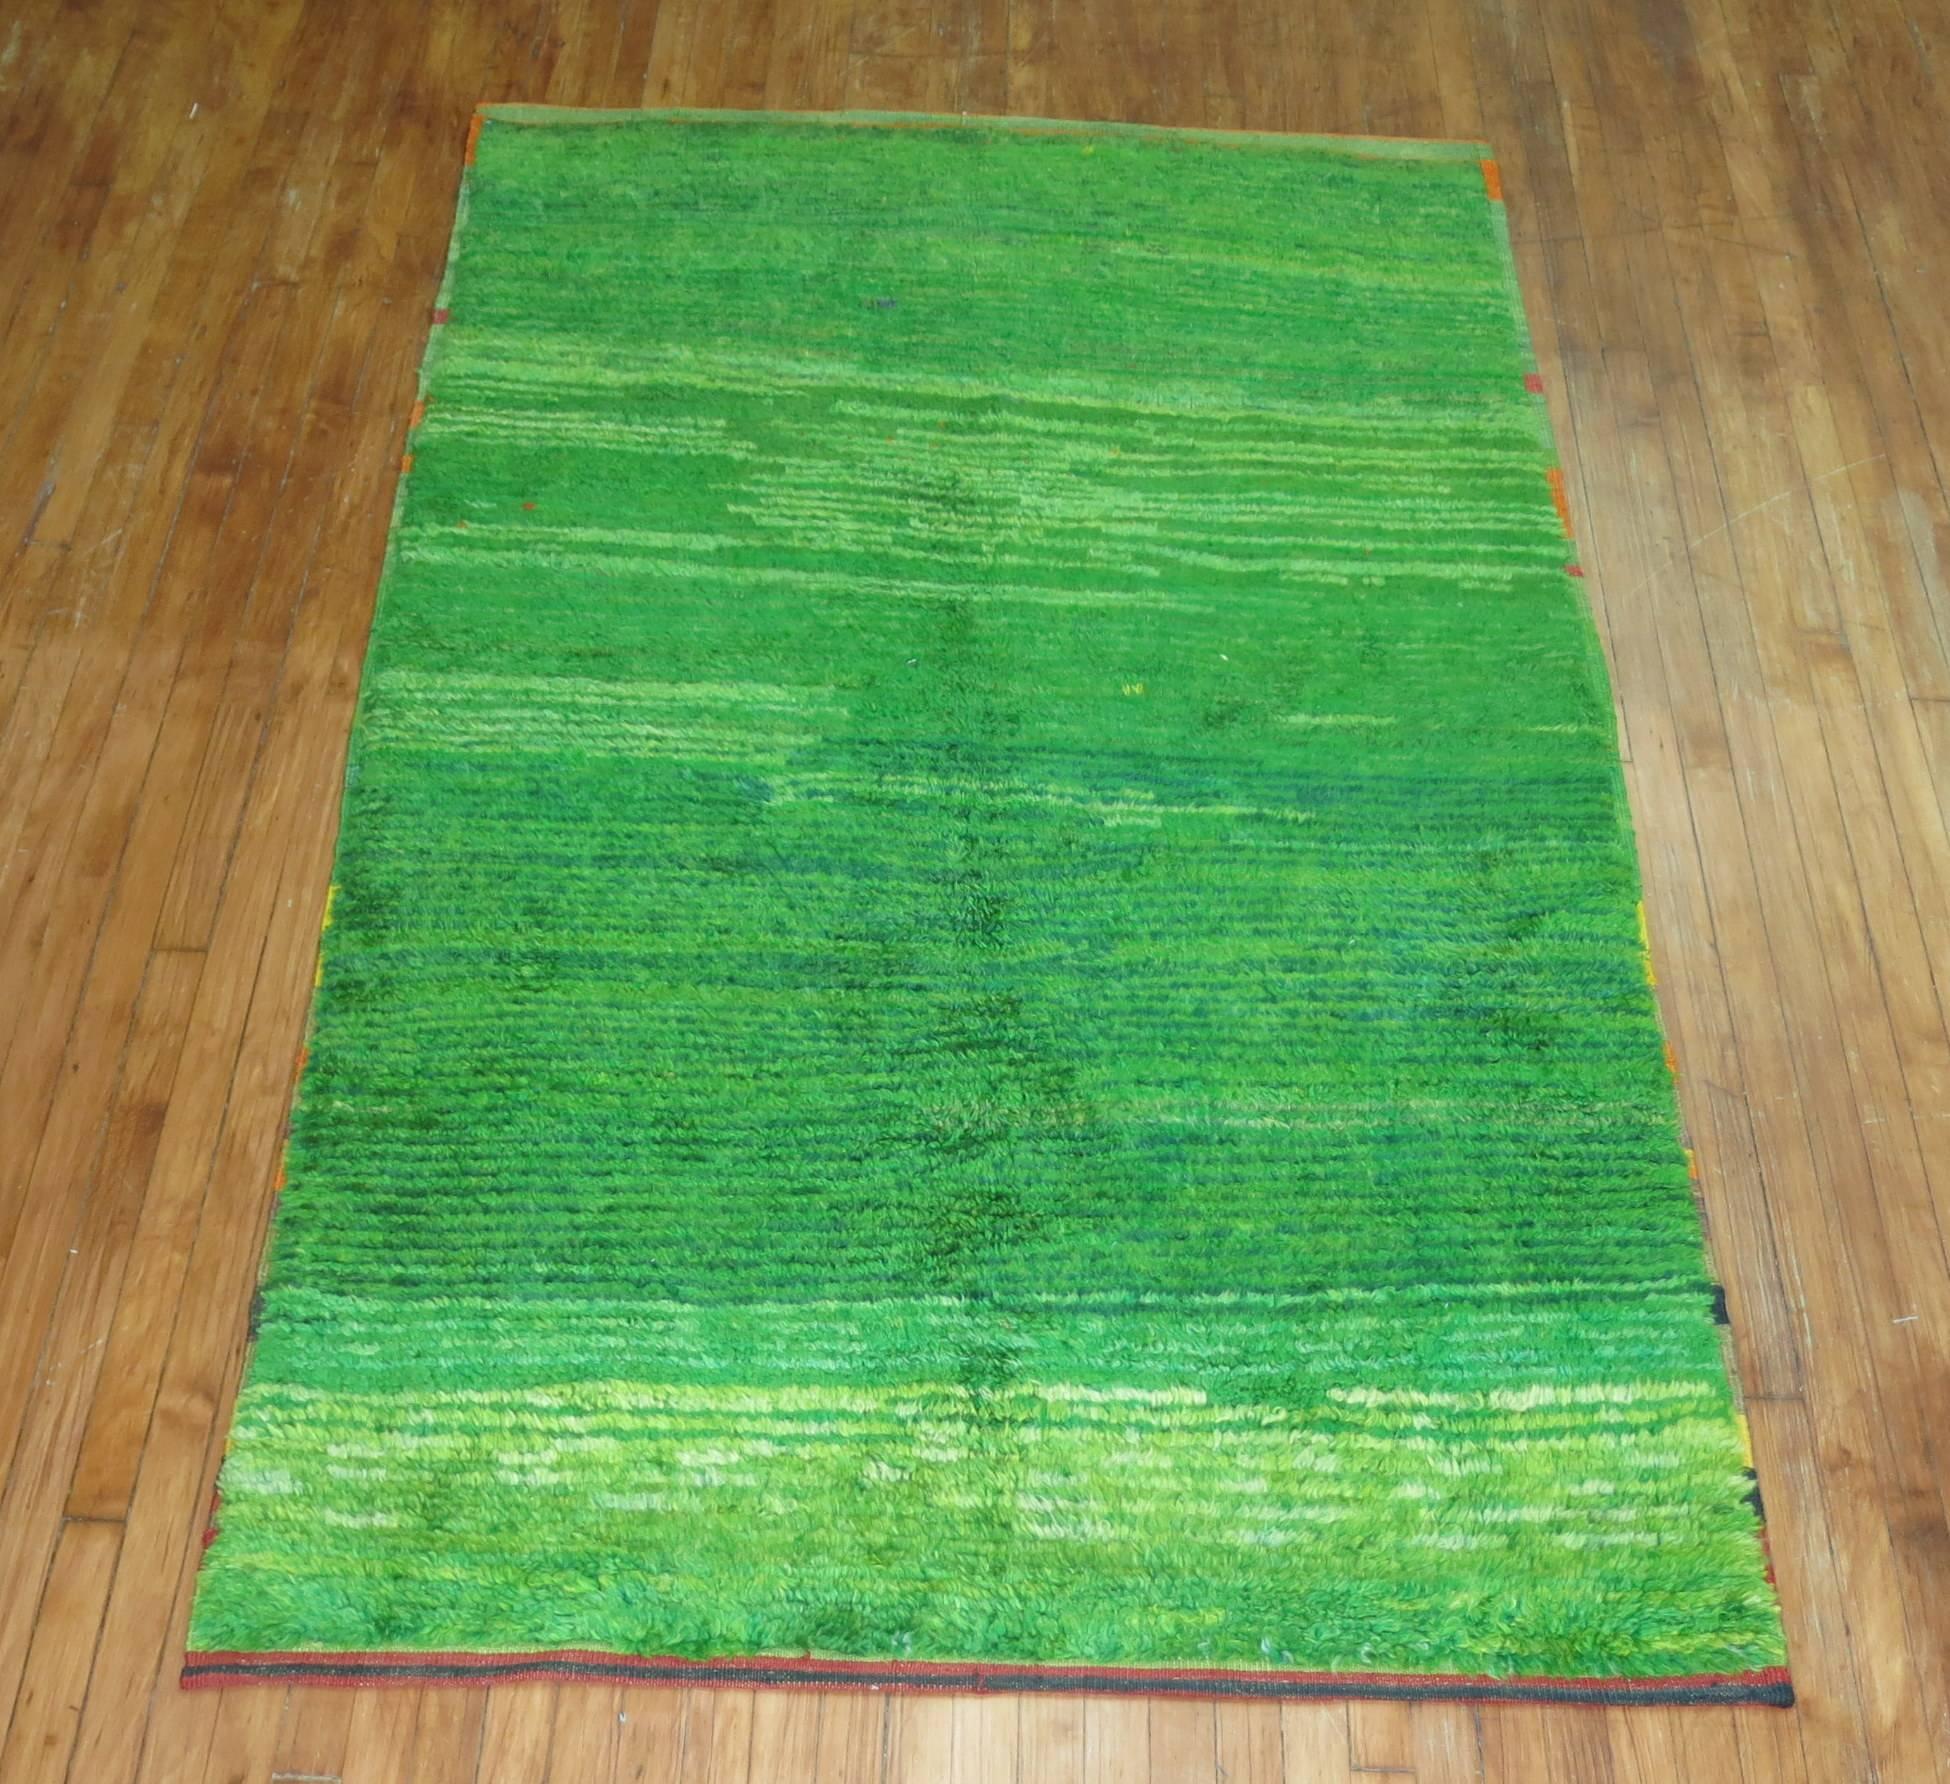 Mid-20th century Turkish Tulu rug.

Measures: 4'9